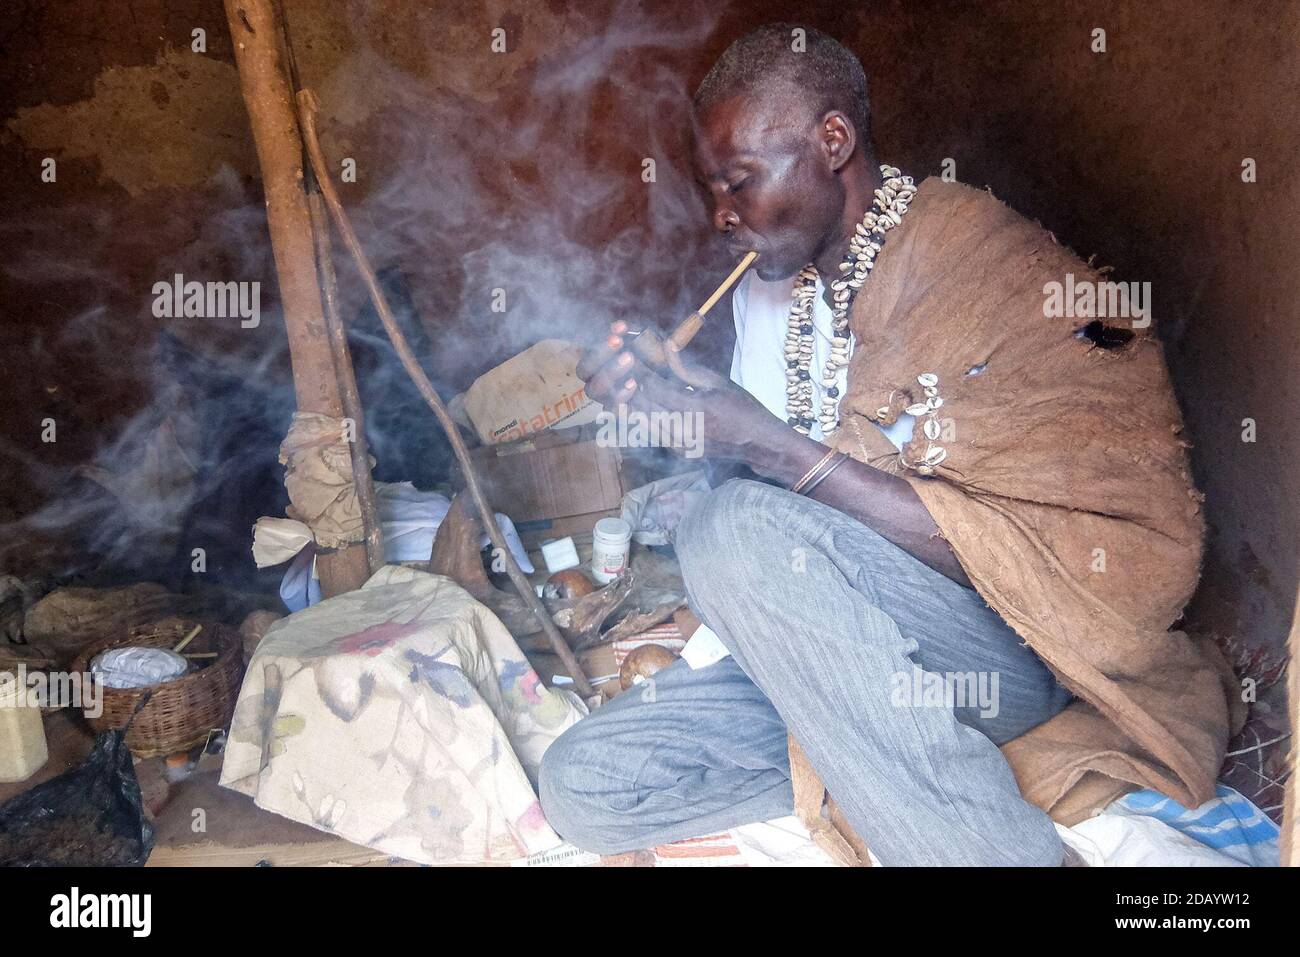 Lubale Bamafamu Idinda, un guérisseur traditionnel, allume un tuyau dans son sanctuaire de Jinja, en Ouganda, pour commencer une cérémonie visant à évoquer les esprits et les ancêtres. Banque D'Images